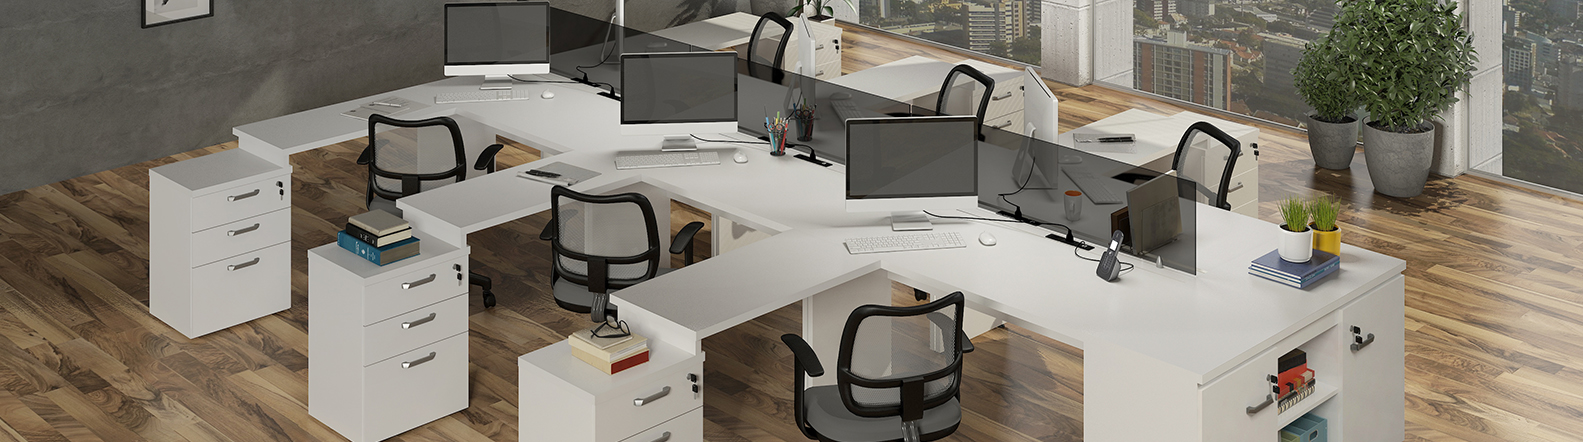 Ambientes modernos e funcionais- móveis e cadeiras escritório